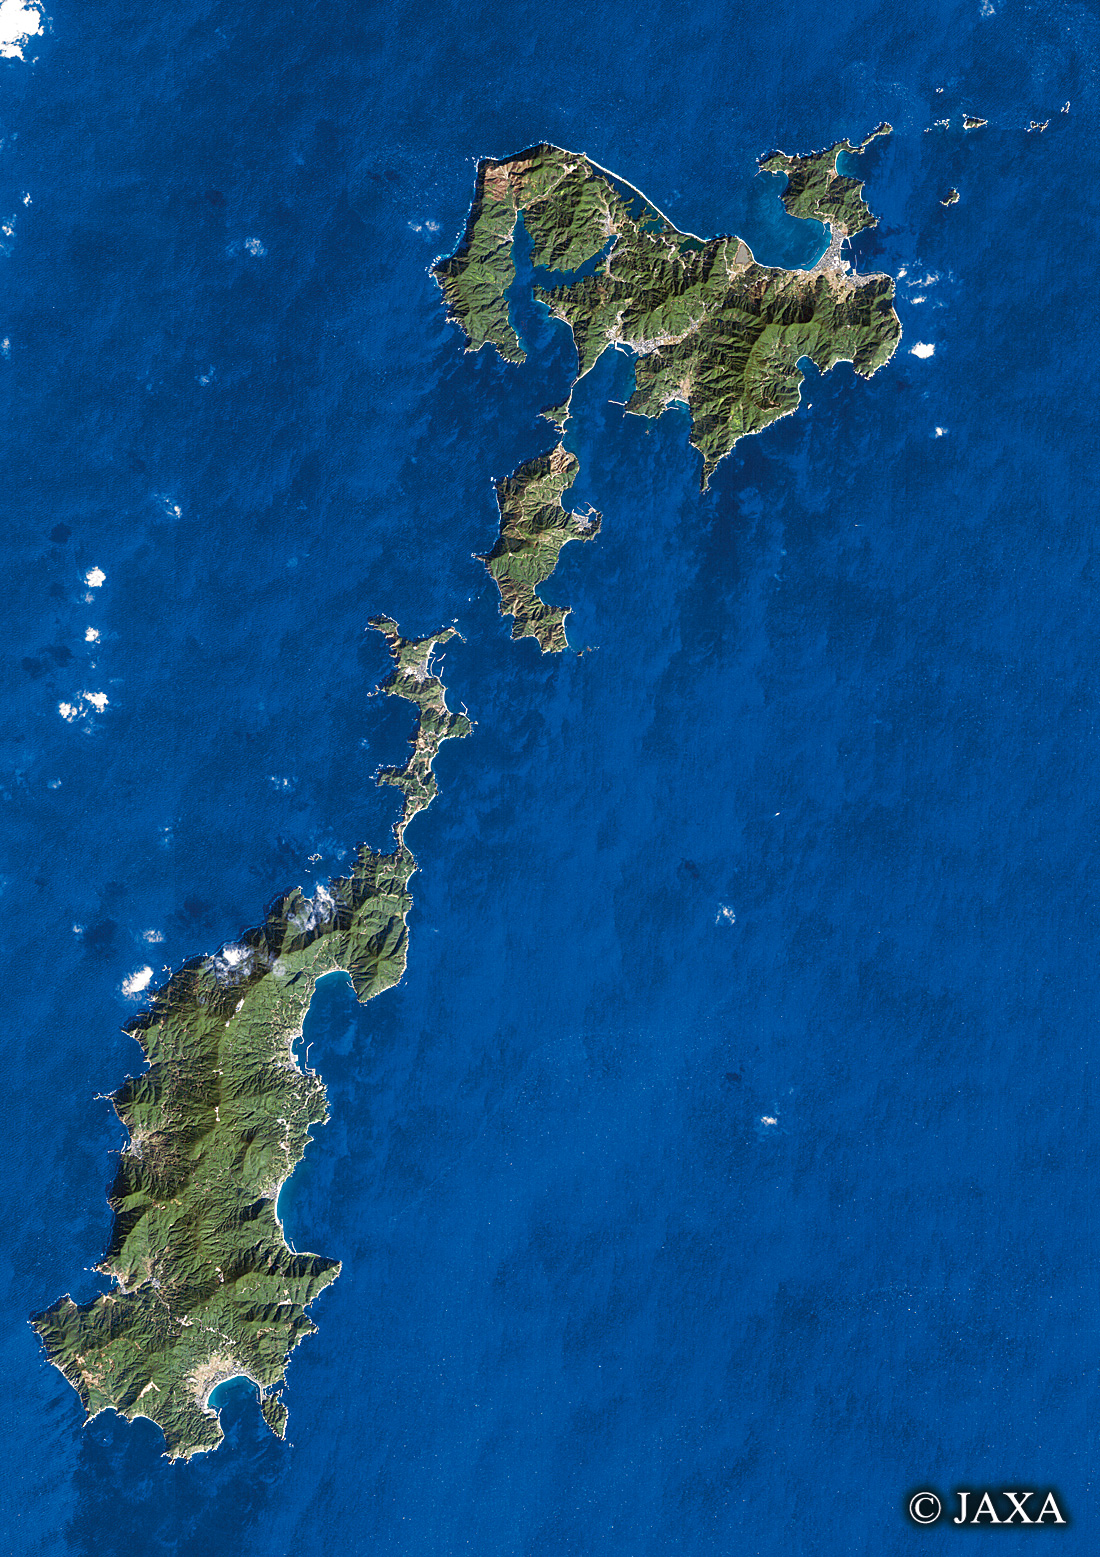 だいちから見た日本の都市 甑島列島:衛星画像